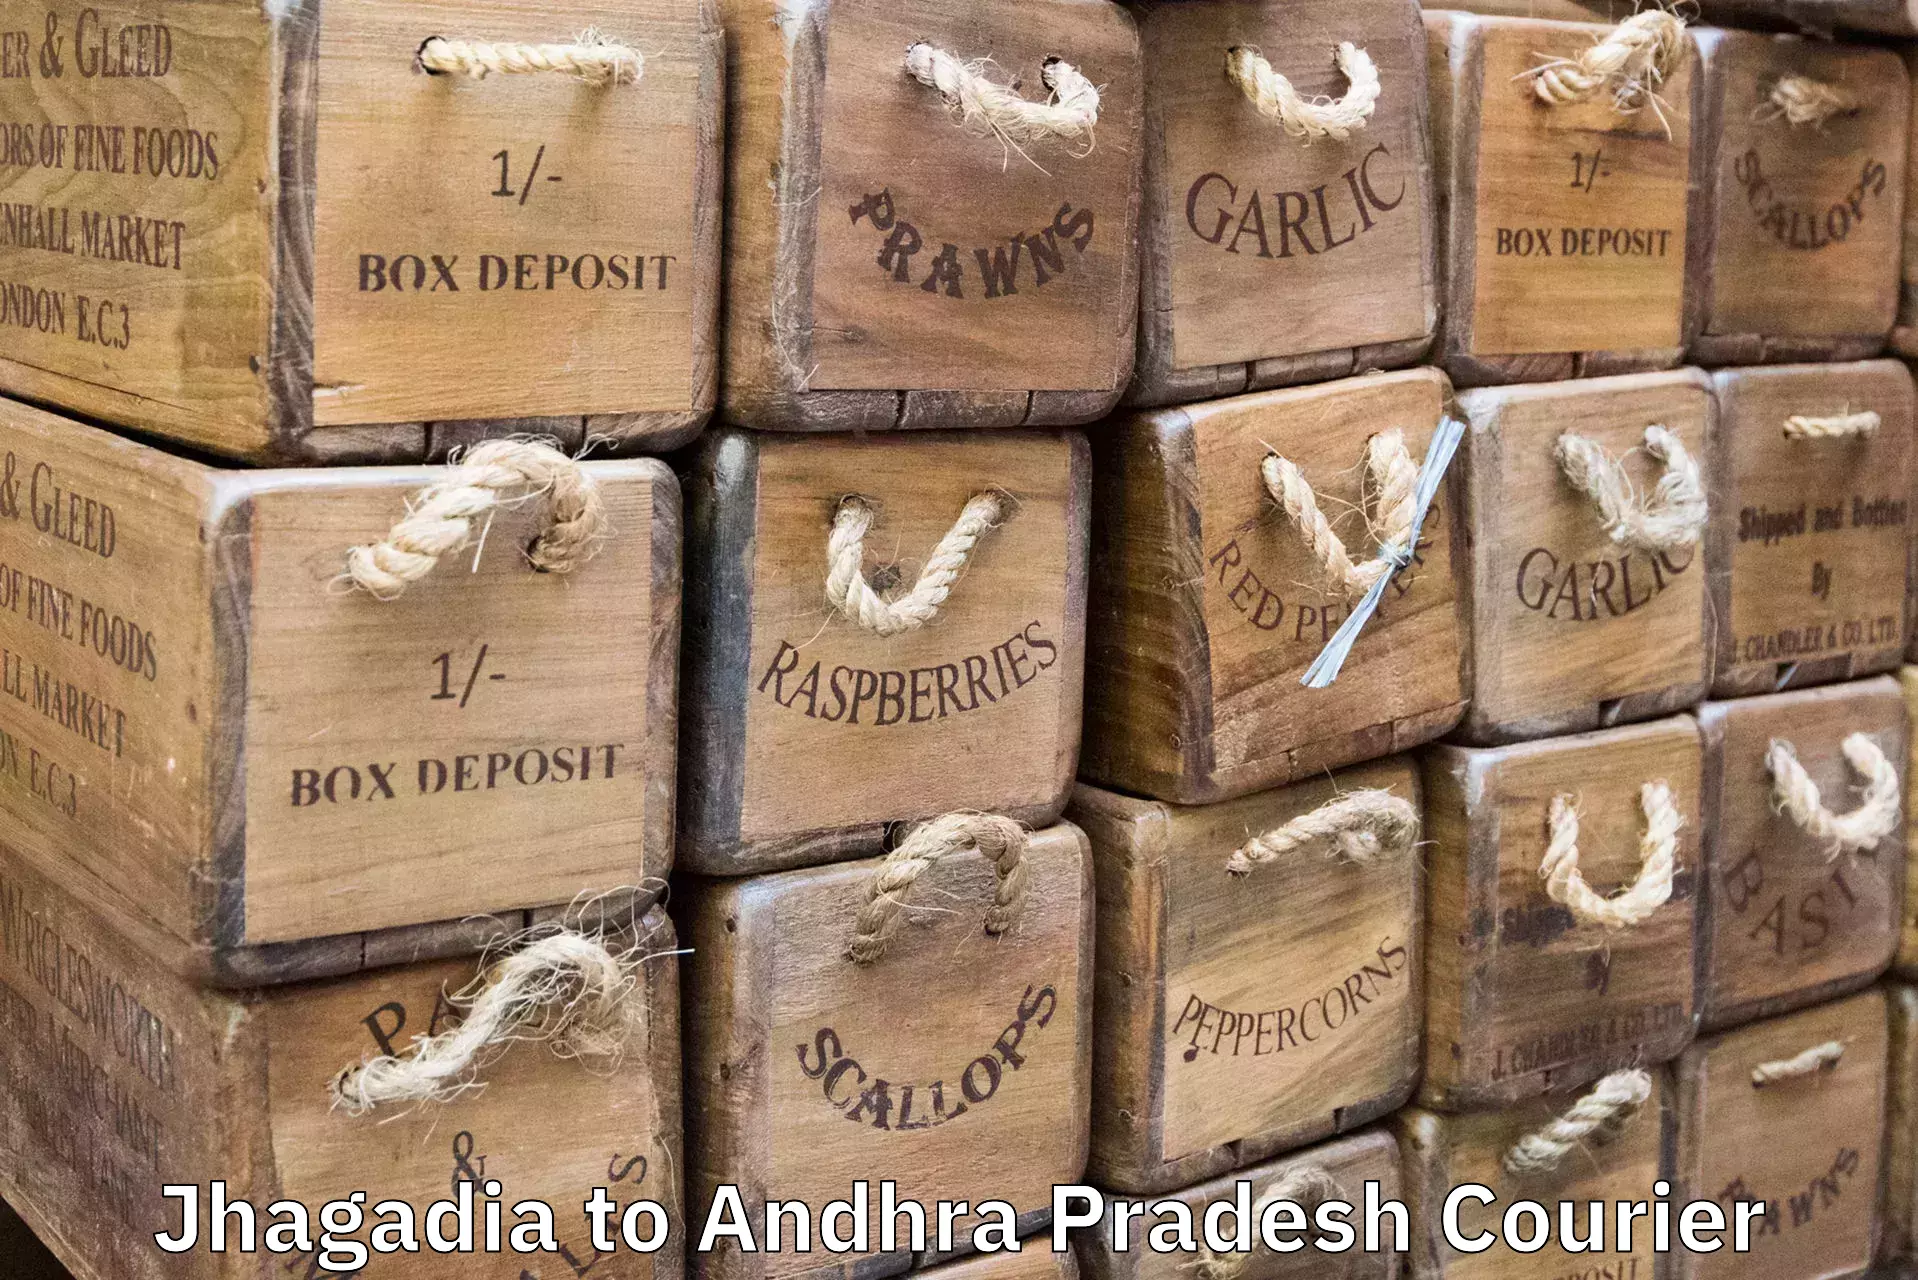 Baggage delivery estimate Jhagadia to Andhra Pradesh